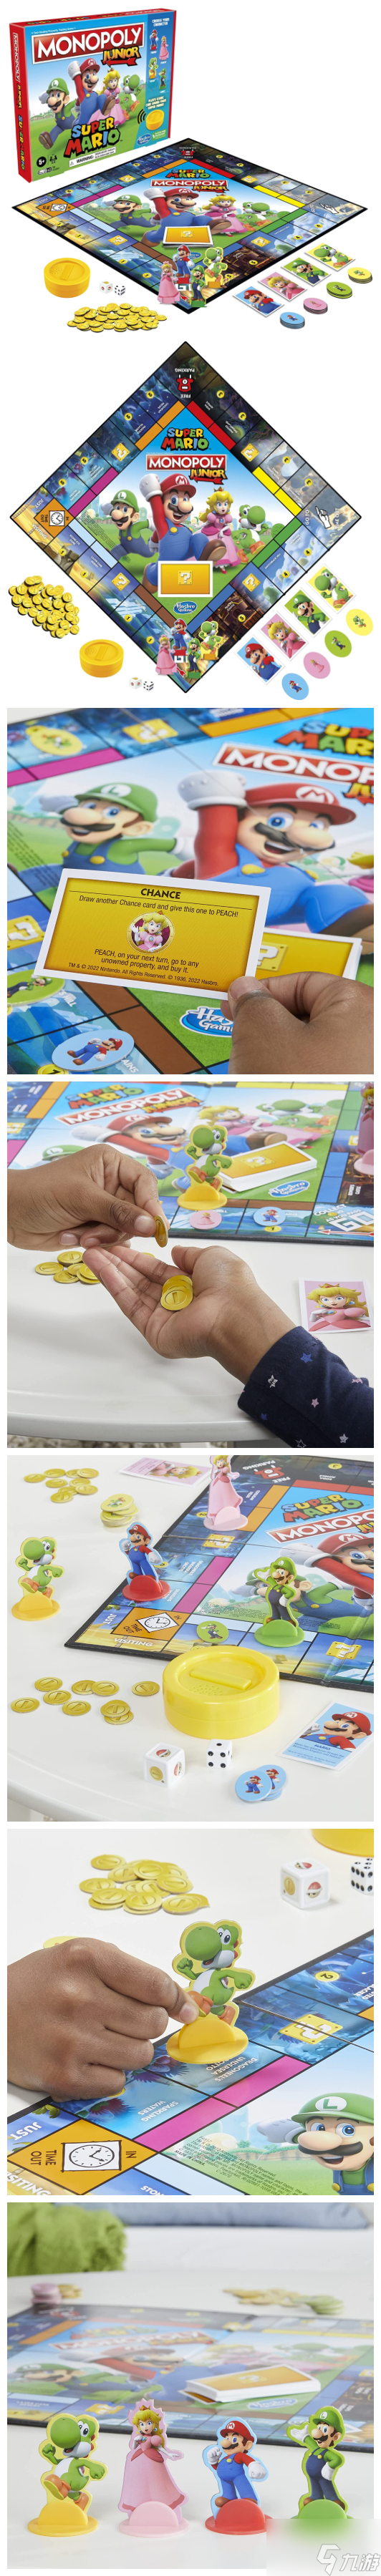 玩具公司孩之宝与任天堂合作推出马里奥主题版《大富翁》